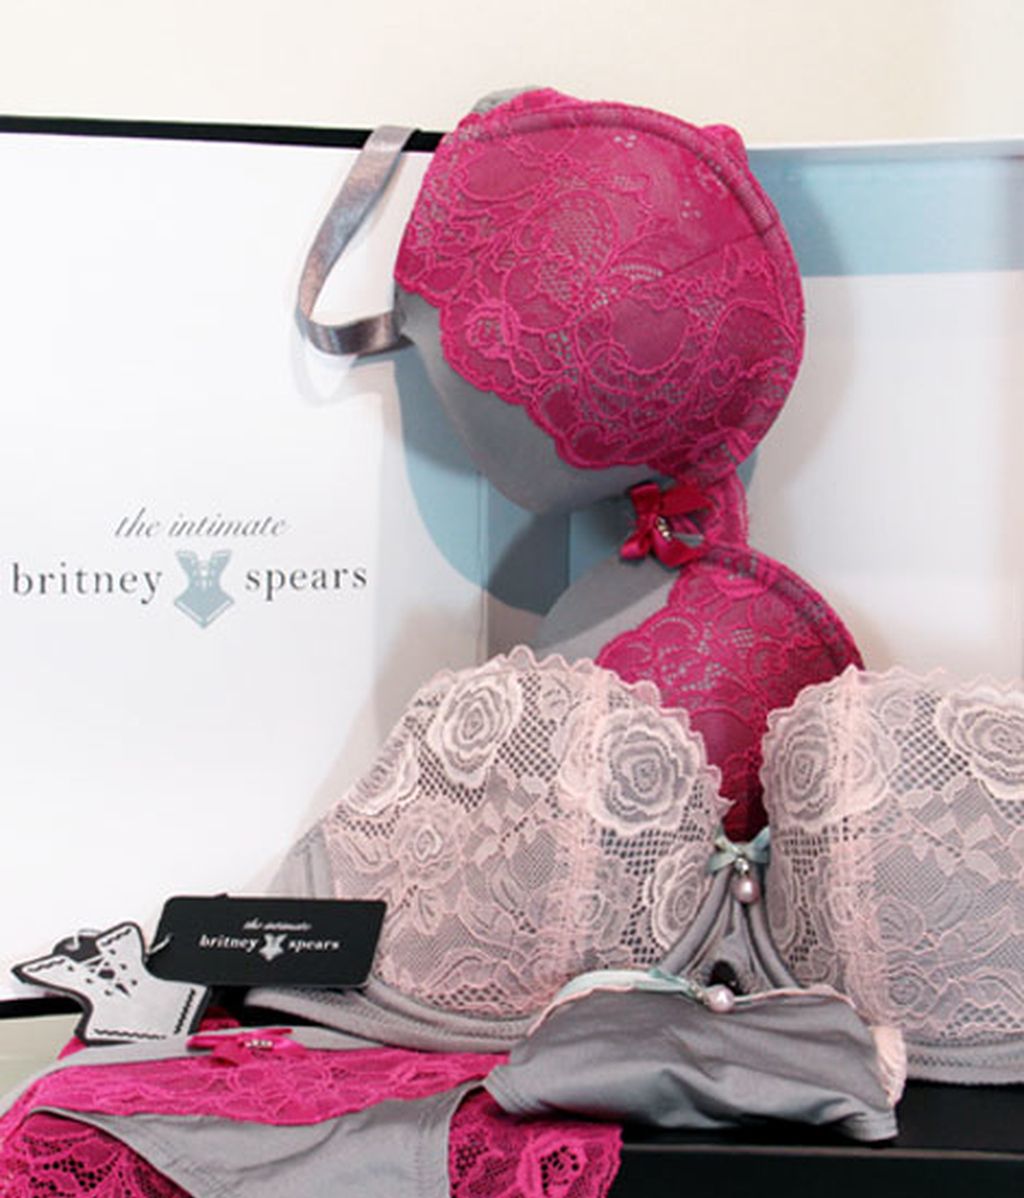 La nueva colección de lencería de Britney Spears